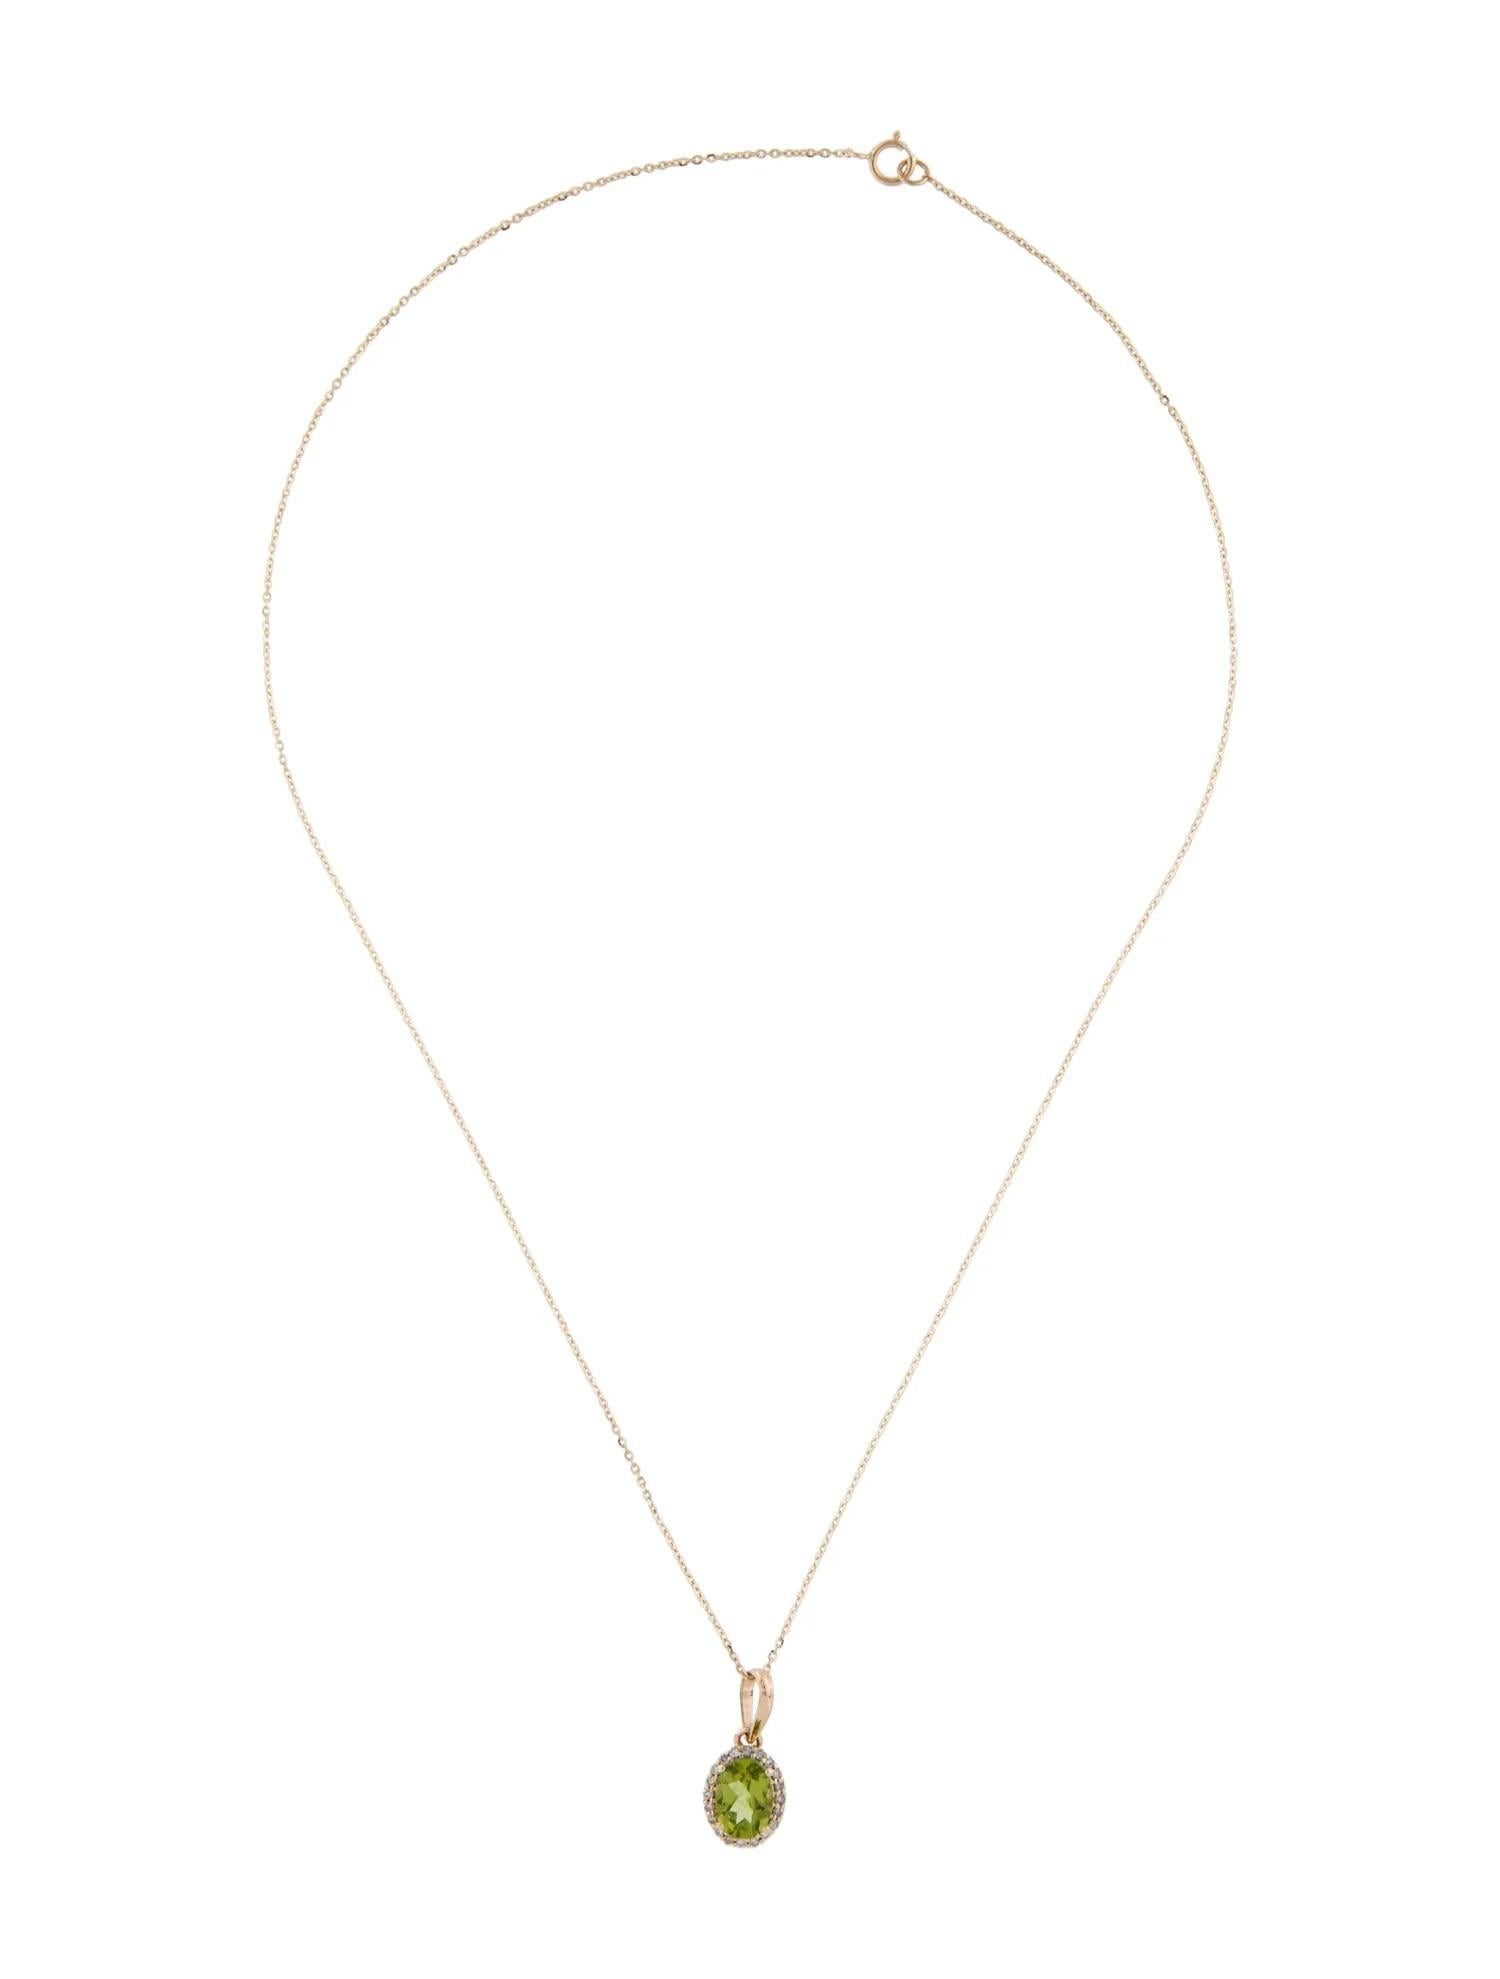 Artist 14K Yellow Gold Peridot & Diamond Pendant Necklace - 1.29 Carat Oval Peridot